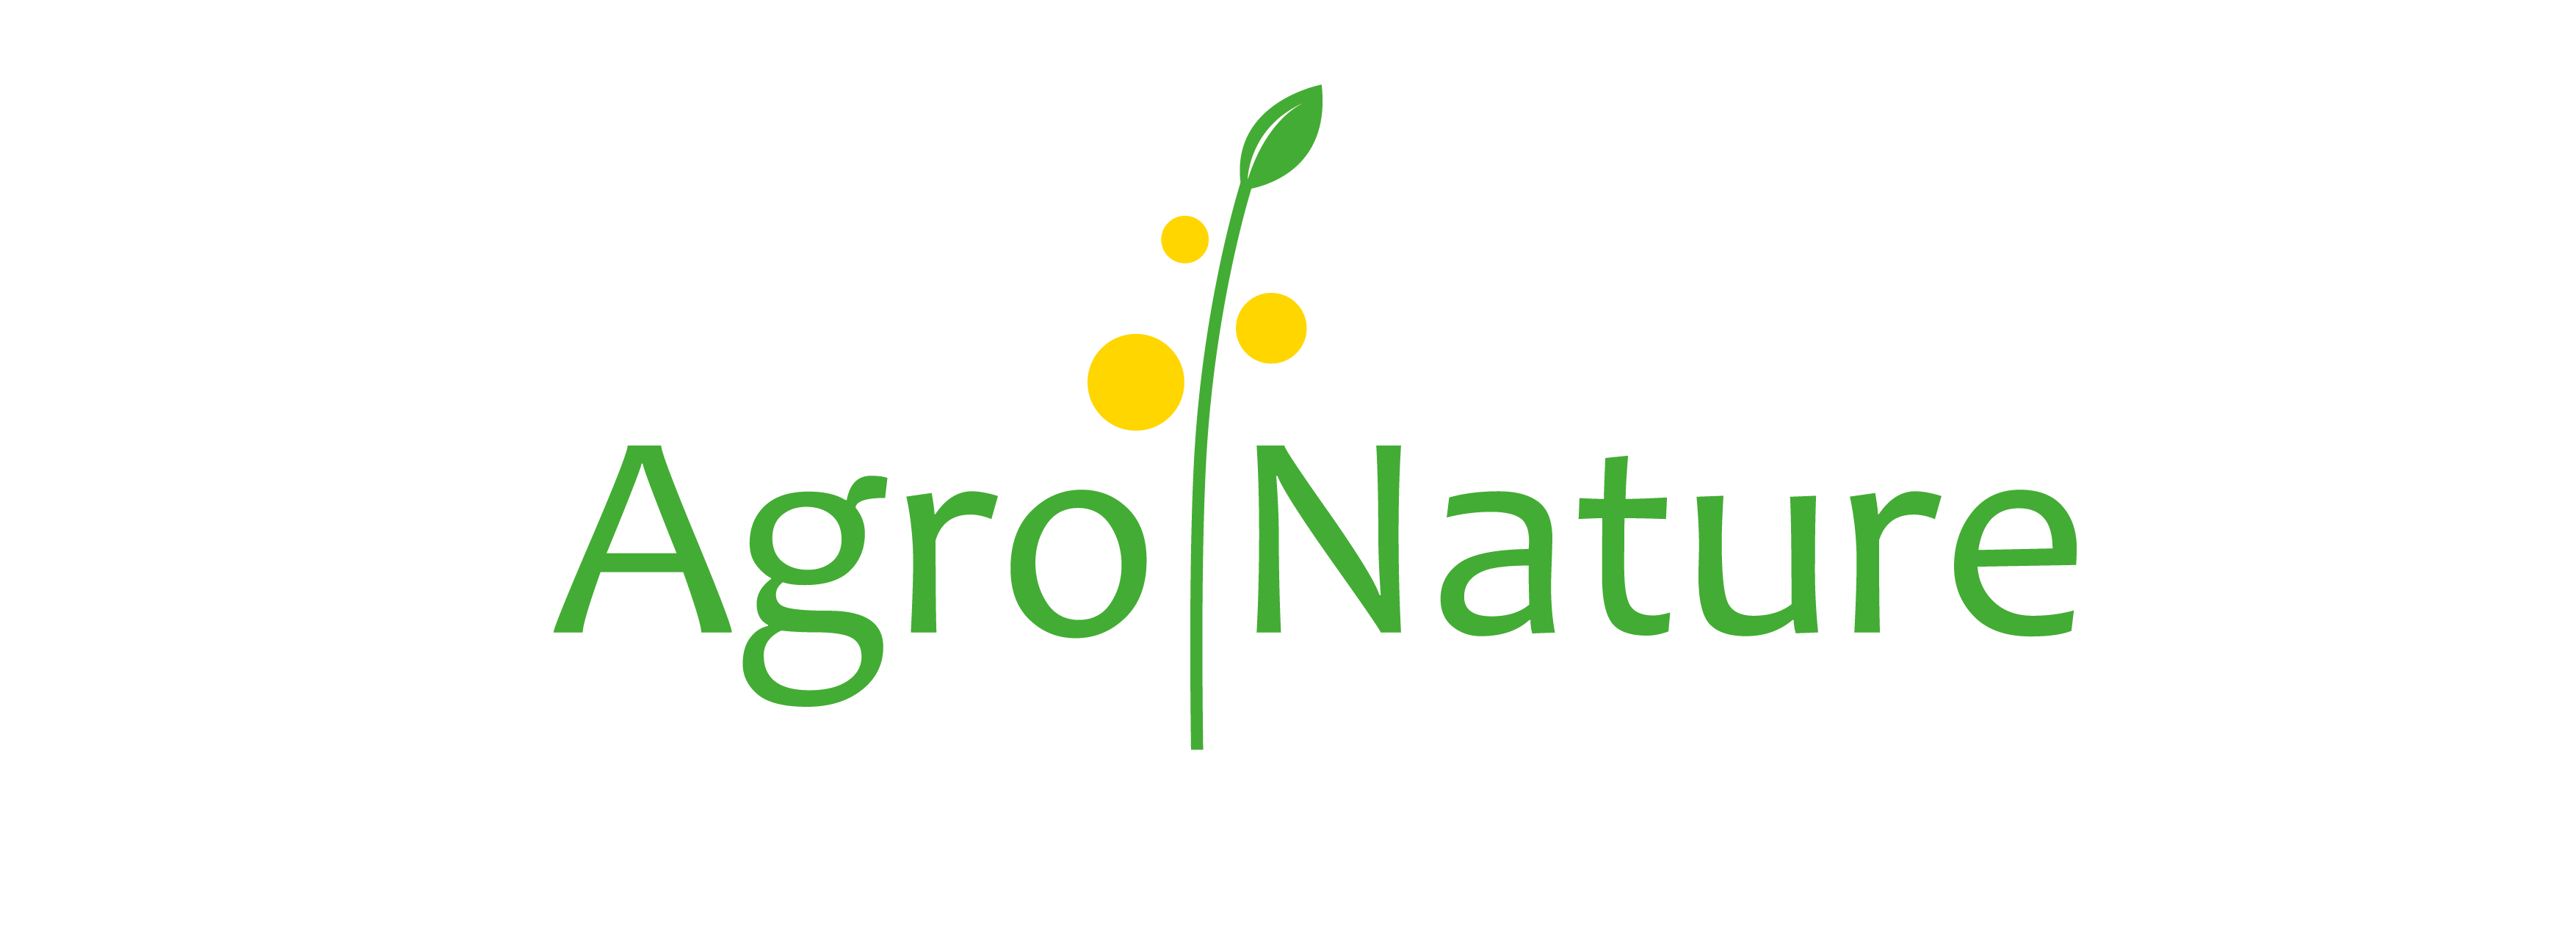 logo AgroNature Services - procédés d'agronomie naturelle